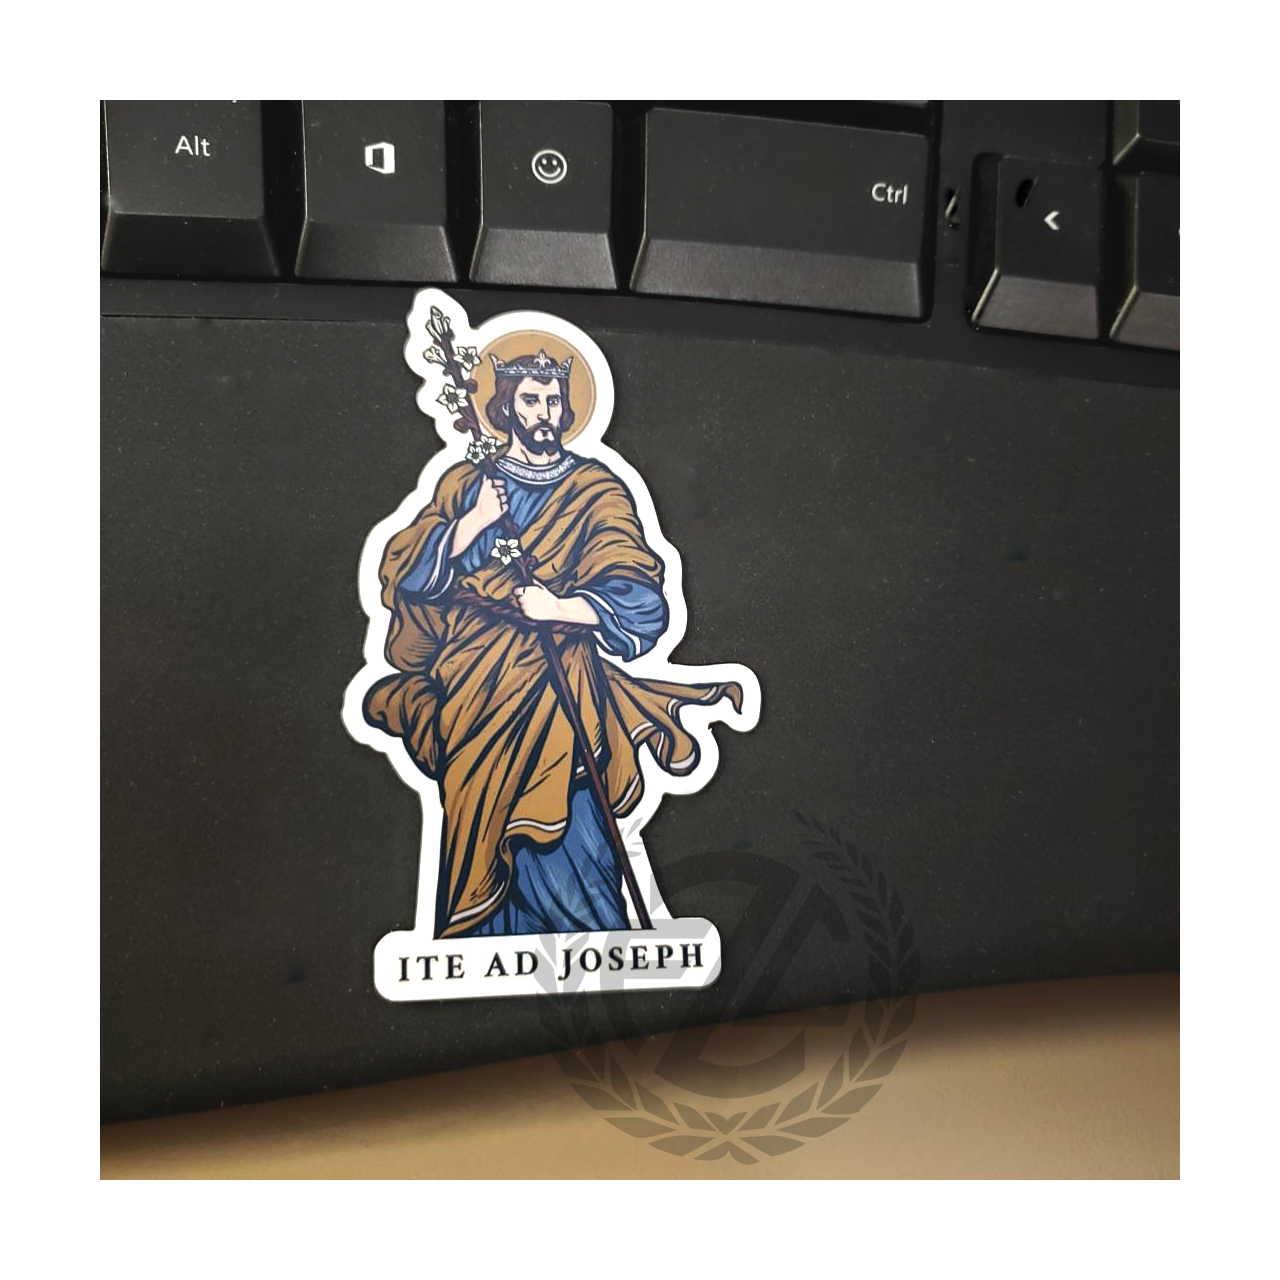 Ultimate Catholic sticker bundle